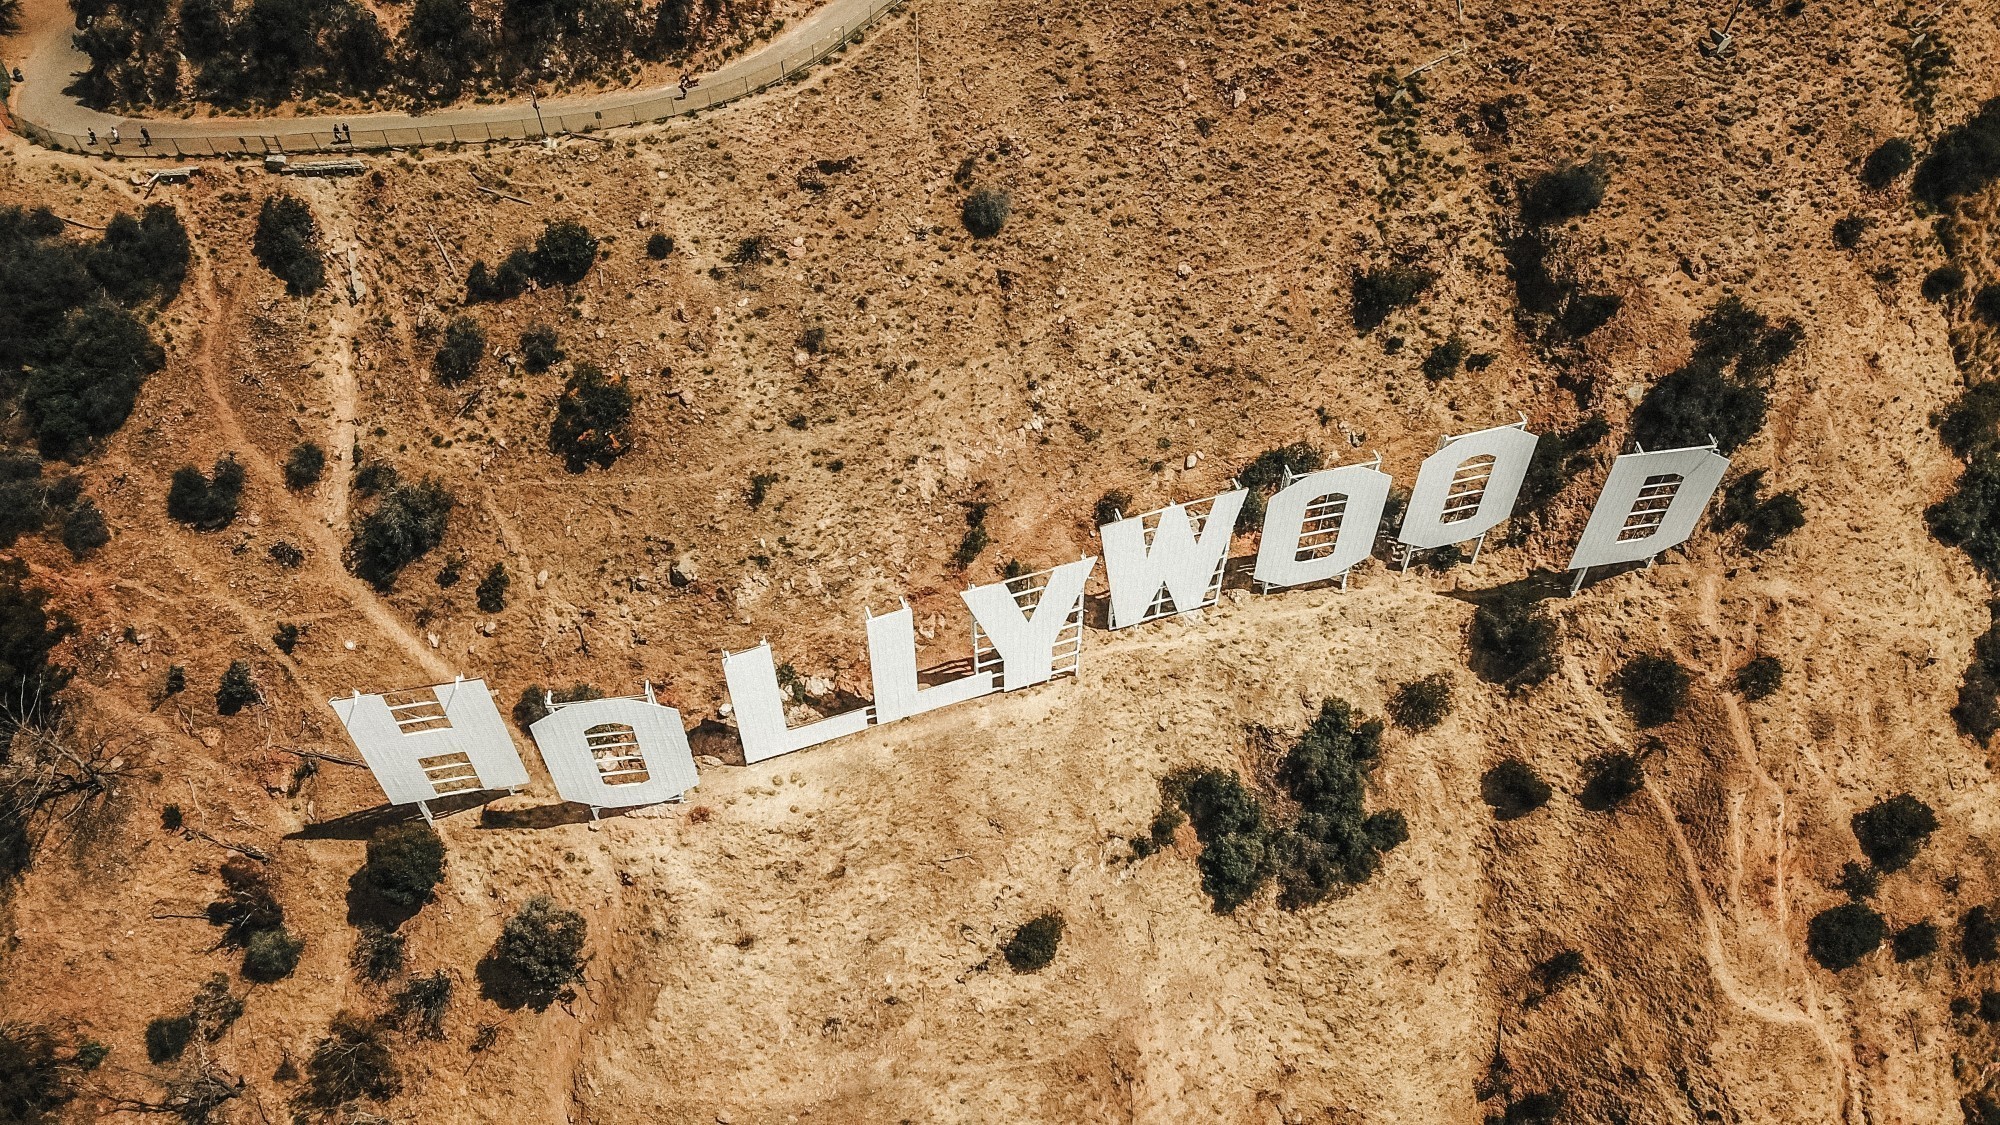 Vue aérienne de l'enseigne Hollywood qui sera repeinte à l'occasion de ses 100 ans d'existence.